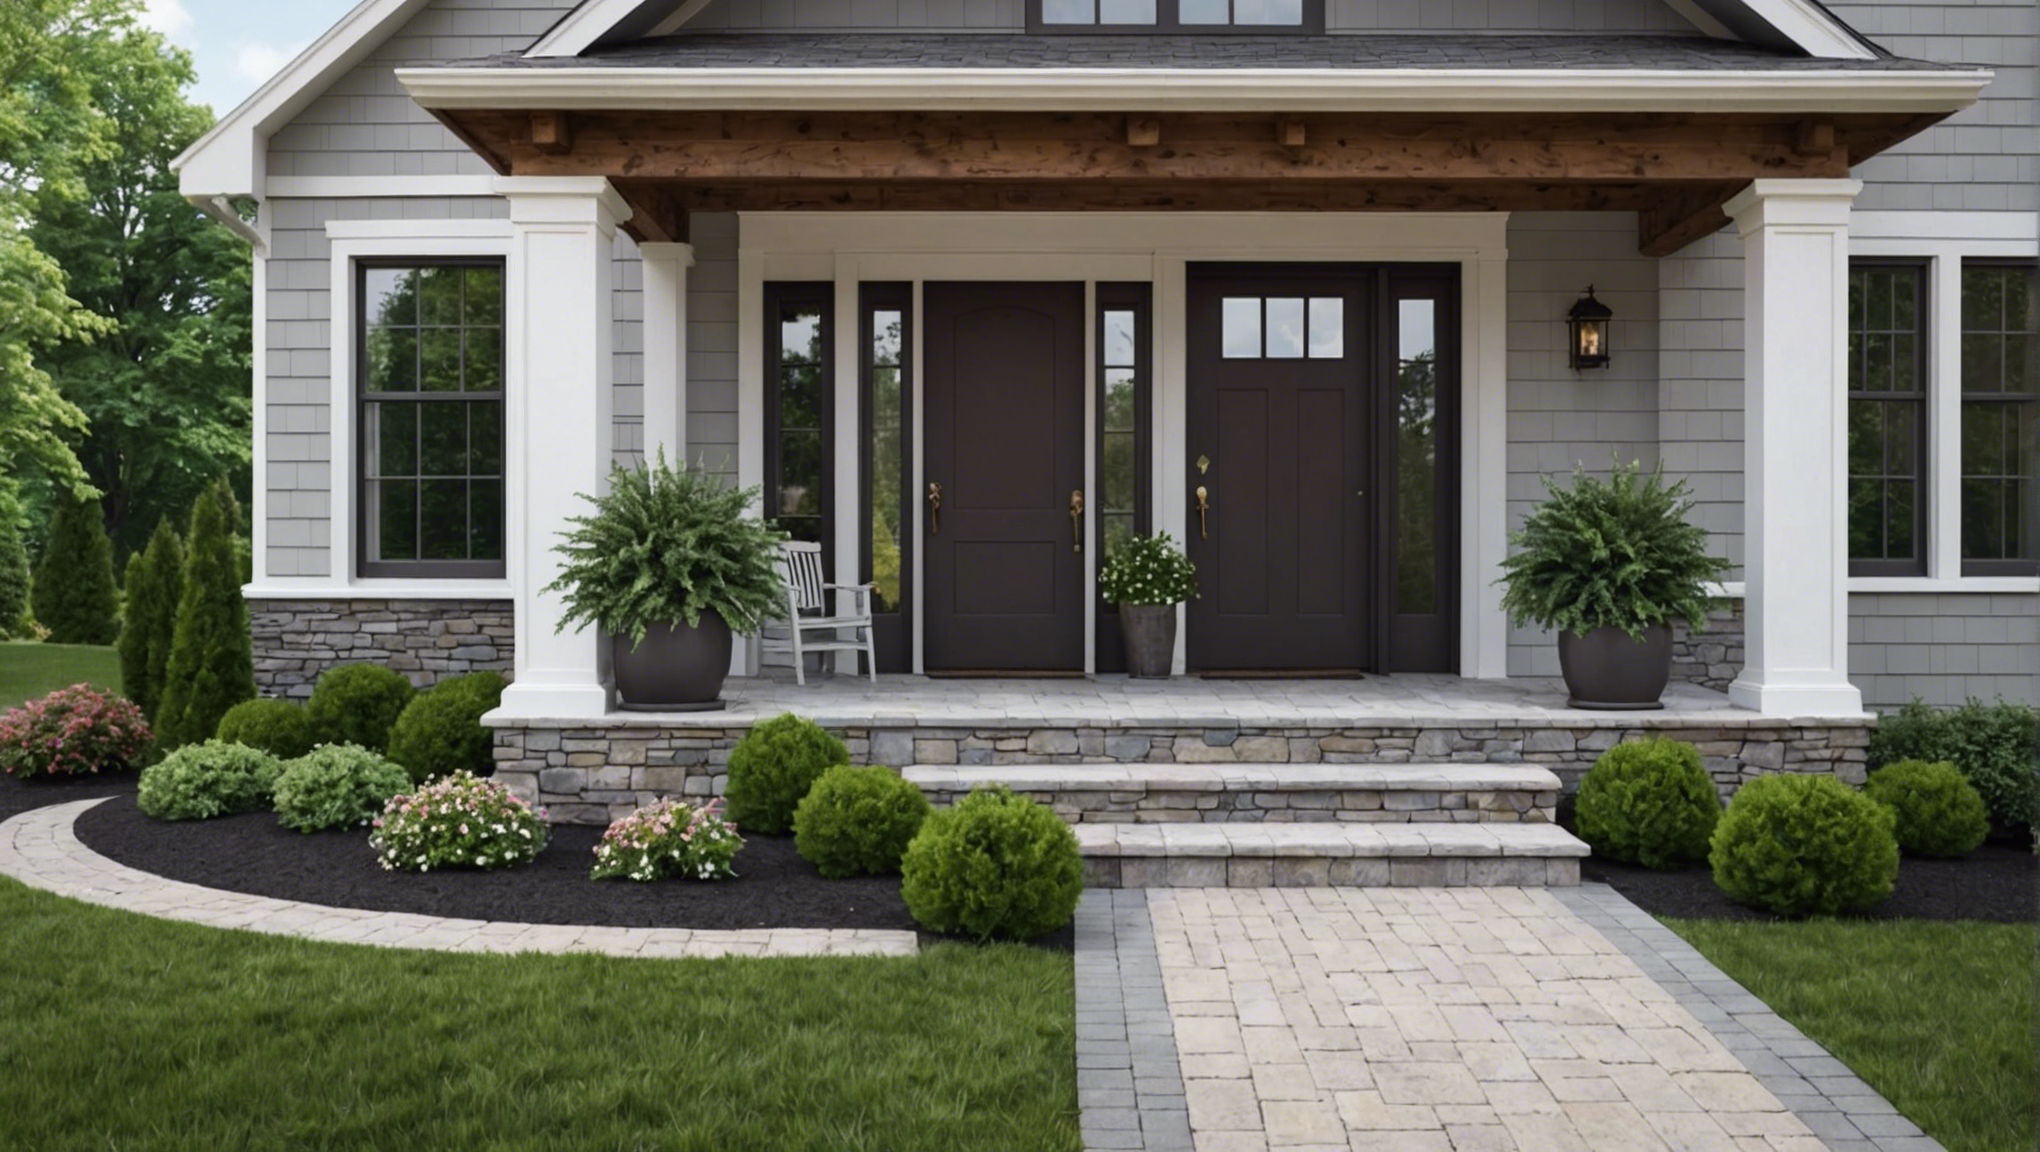 découvrez nos conseils pour embellir l'entrée de votre maison avec un aménagement extérieur attractif et accueillant.